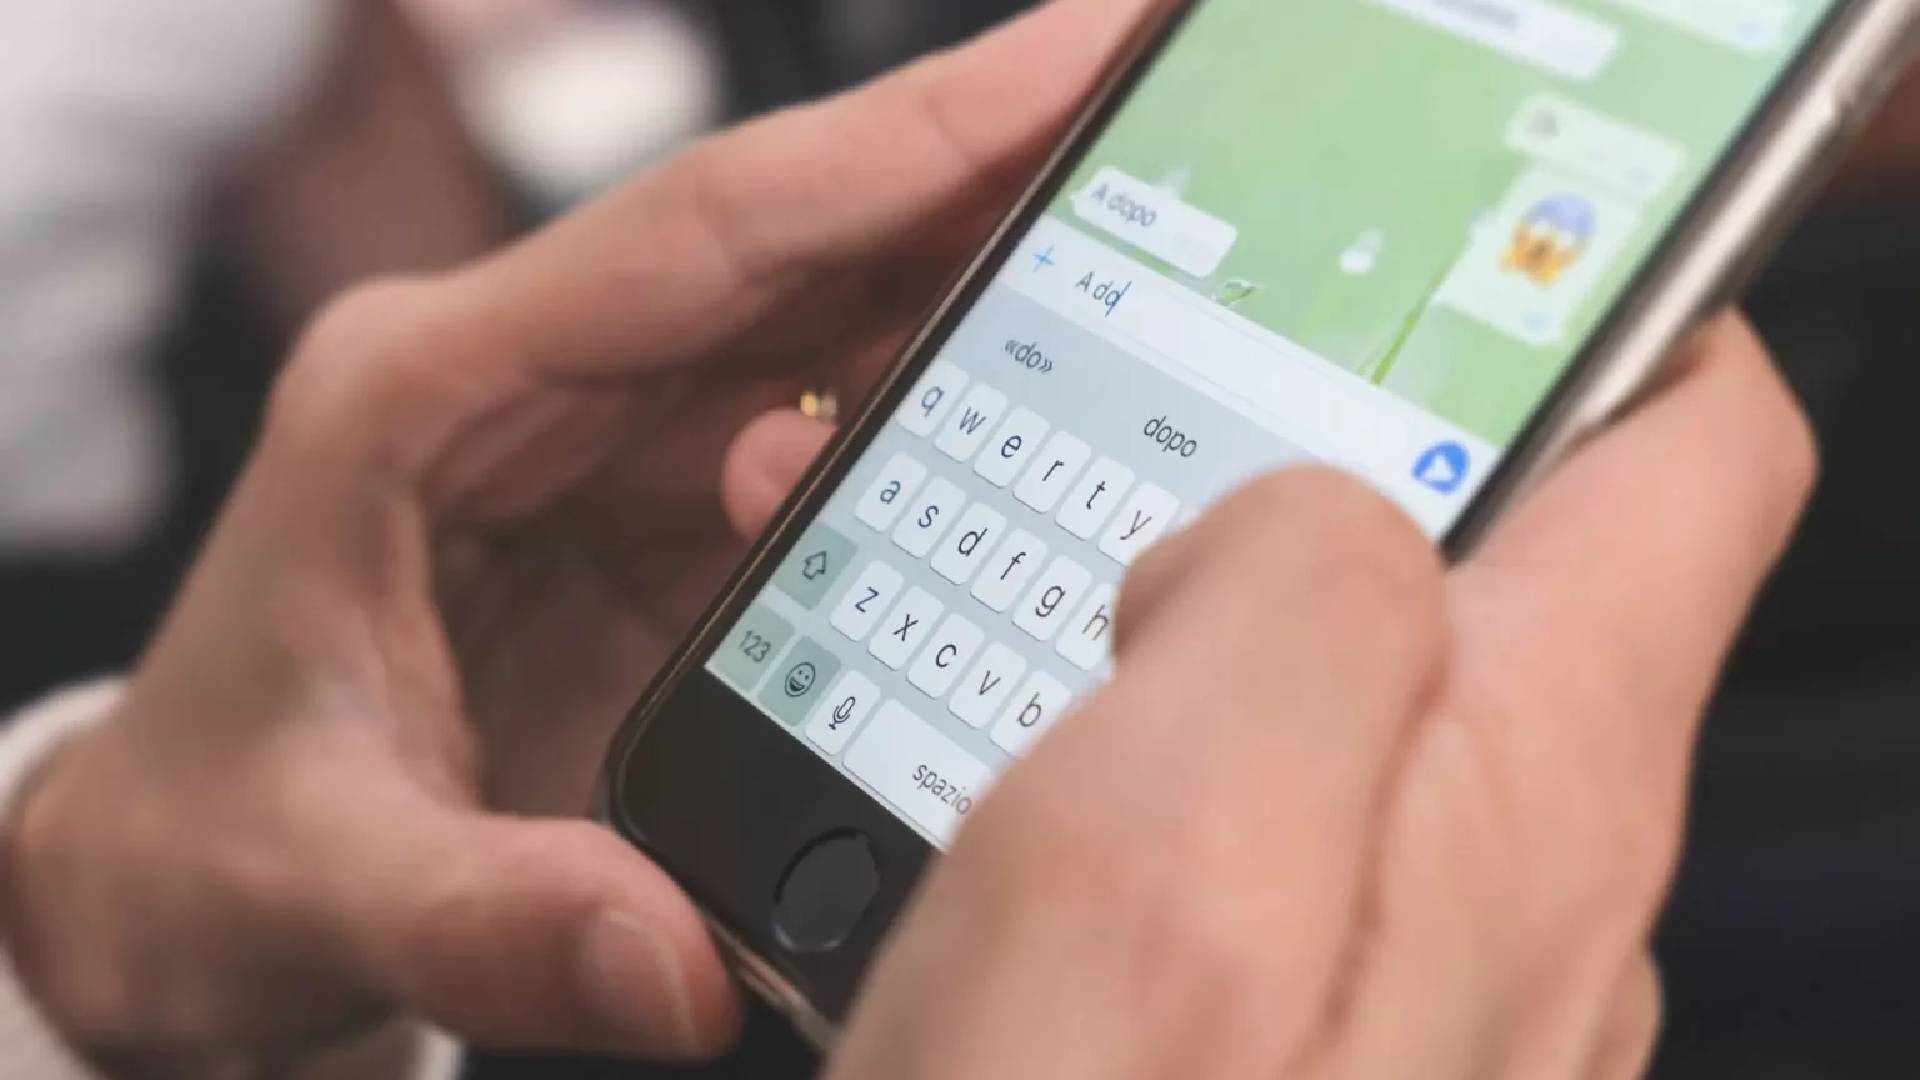 Pessoa escrevendo uma mensagem ilustrando recados para mandar depois de sair com alguém. 6 mensagens que uma pessoa que fala mal das outras costuma enviar no WhatsApp